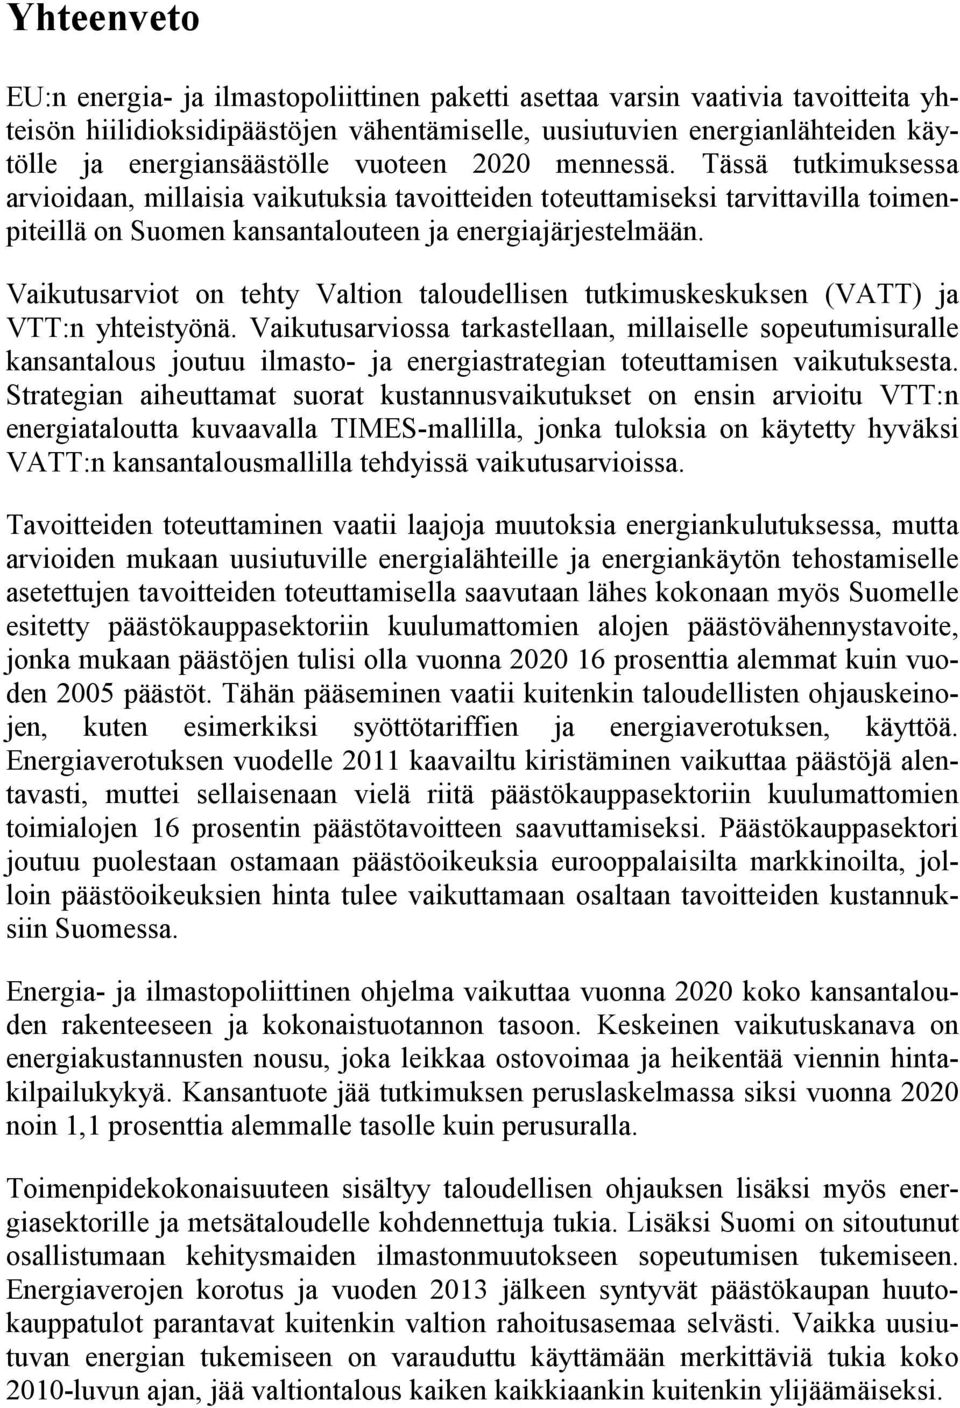 Vaikutusarviot on tehty Valtion taloudellisen tutkimuskeskuksen (VATT) ja VTT:n yhteistyönä.